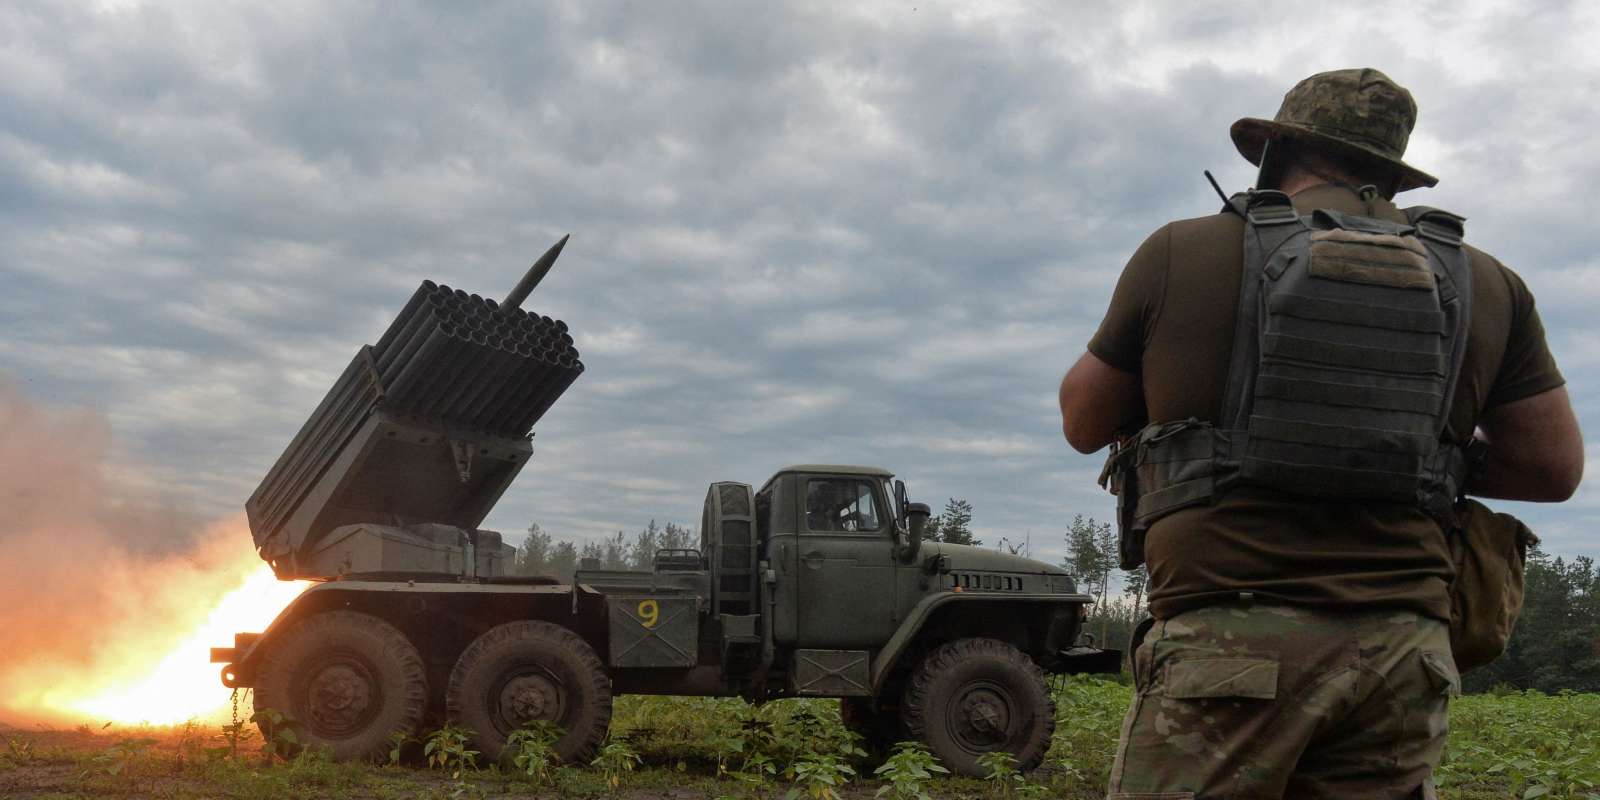 Moscou affirme que les Etats-Unis sont directement impliqués dans la guerre en Ukraine, en tant qu’« artilleurs »